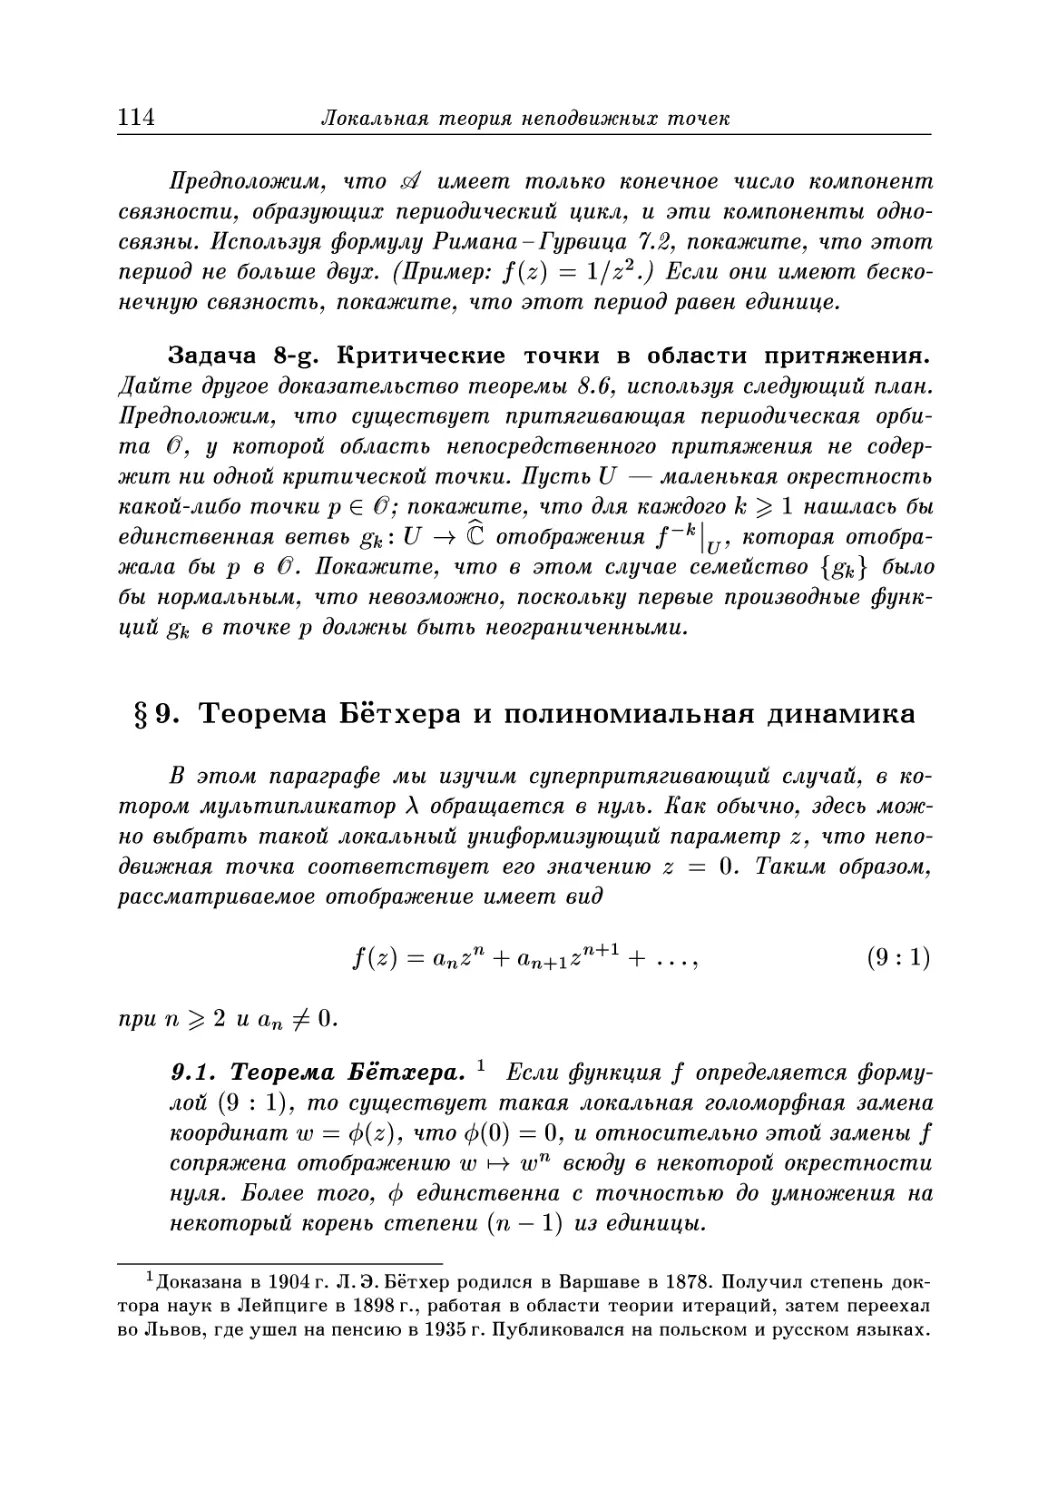 § 9. Теорема Бетхера и полиномиальная динамика